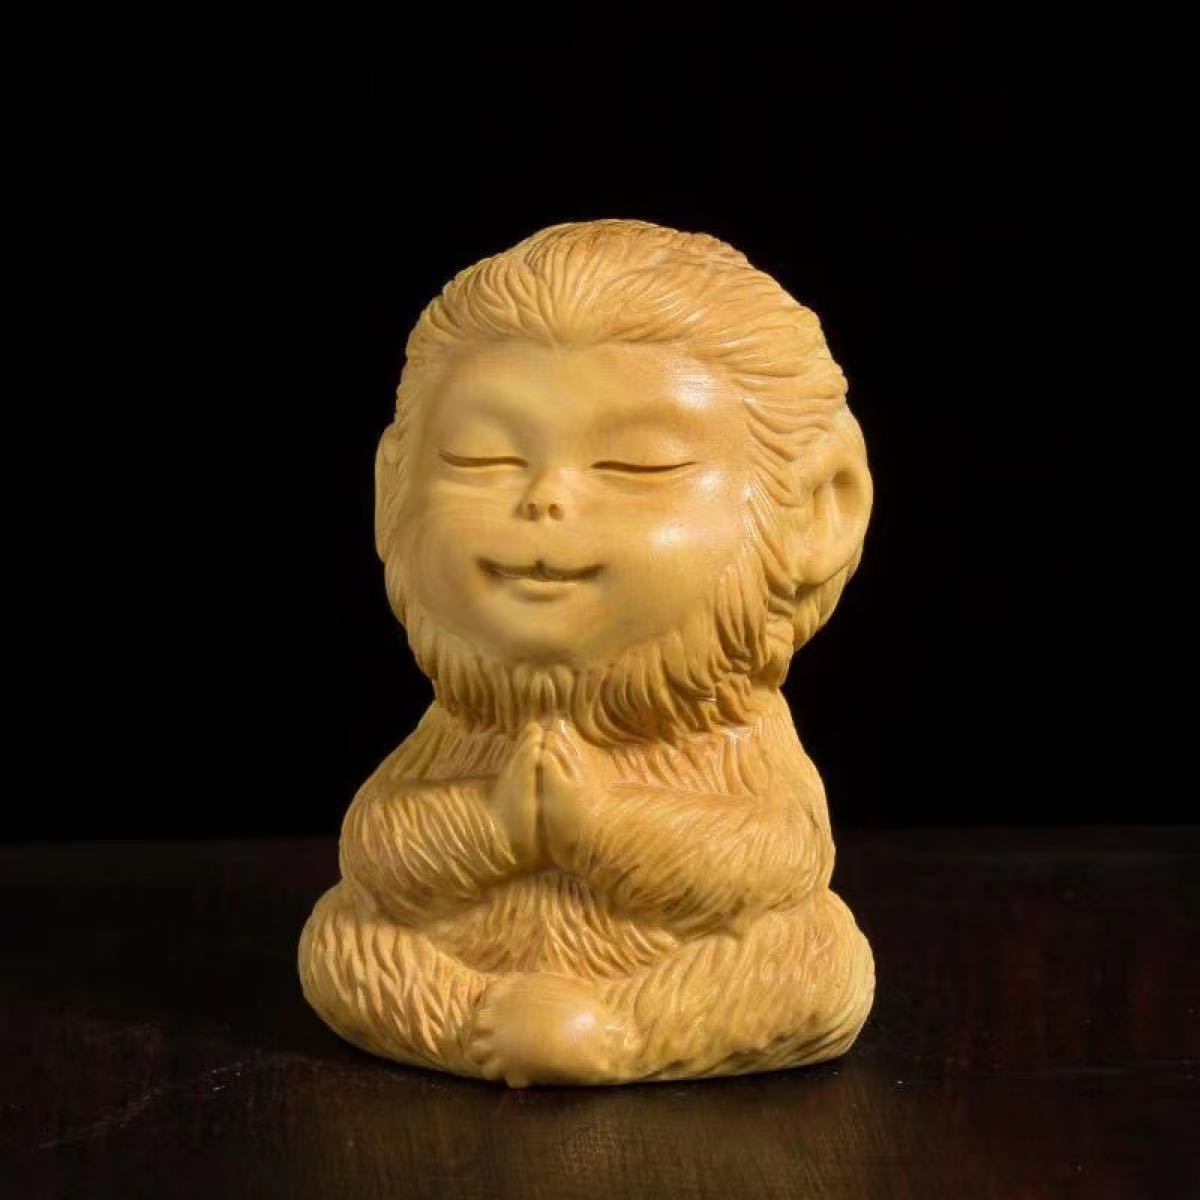 柘植木　静思　木彫り　可愛い孫悟空　彫刻　お念猿　オブジェ　置物　サイズ約6×４ｃｍ　柘植木材 伝統的に細工物 仏教美術 